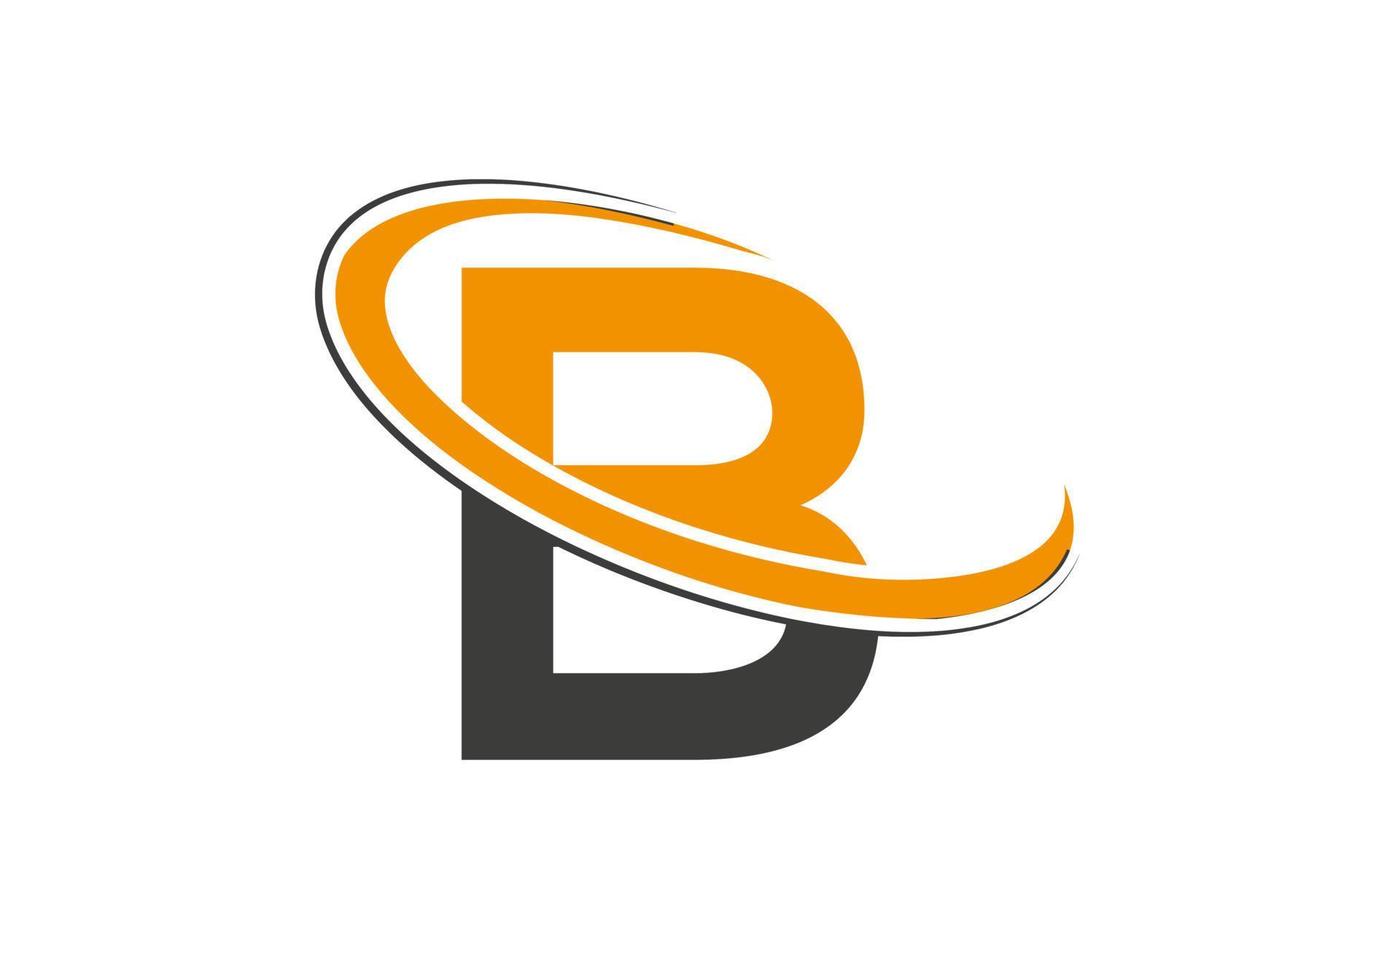 anfangsbuchstabe b logo für immobilien-, geschäfts- und unternehmensidentität vektor